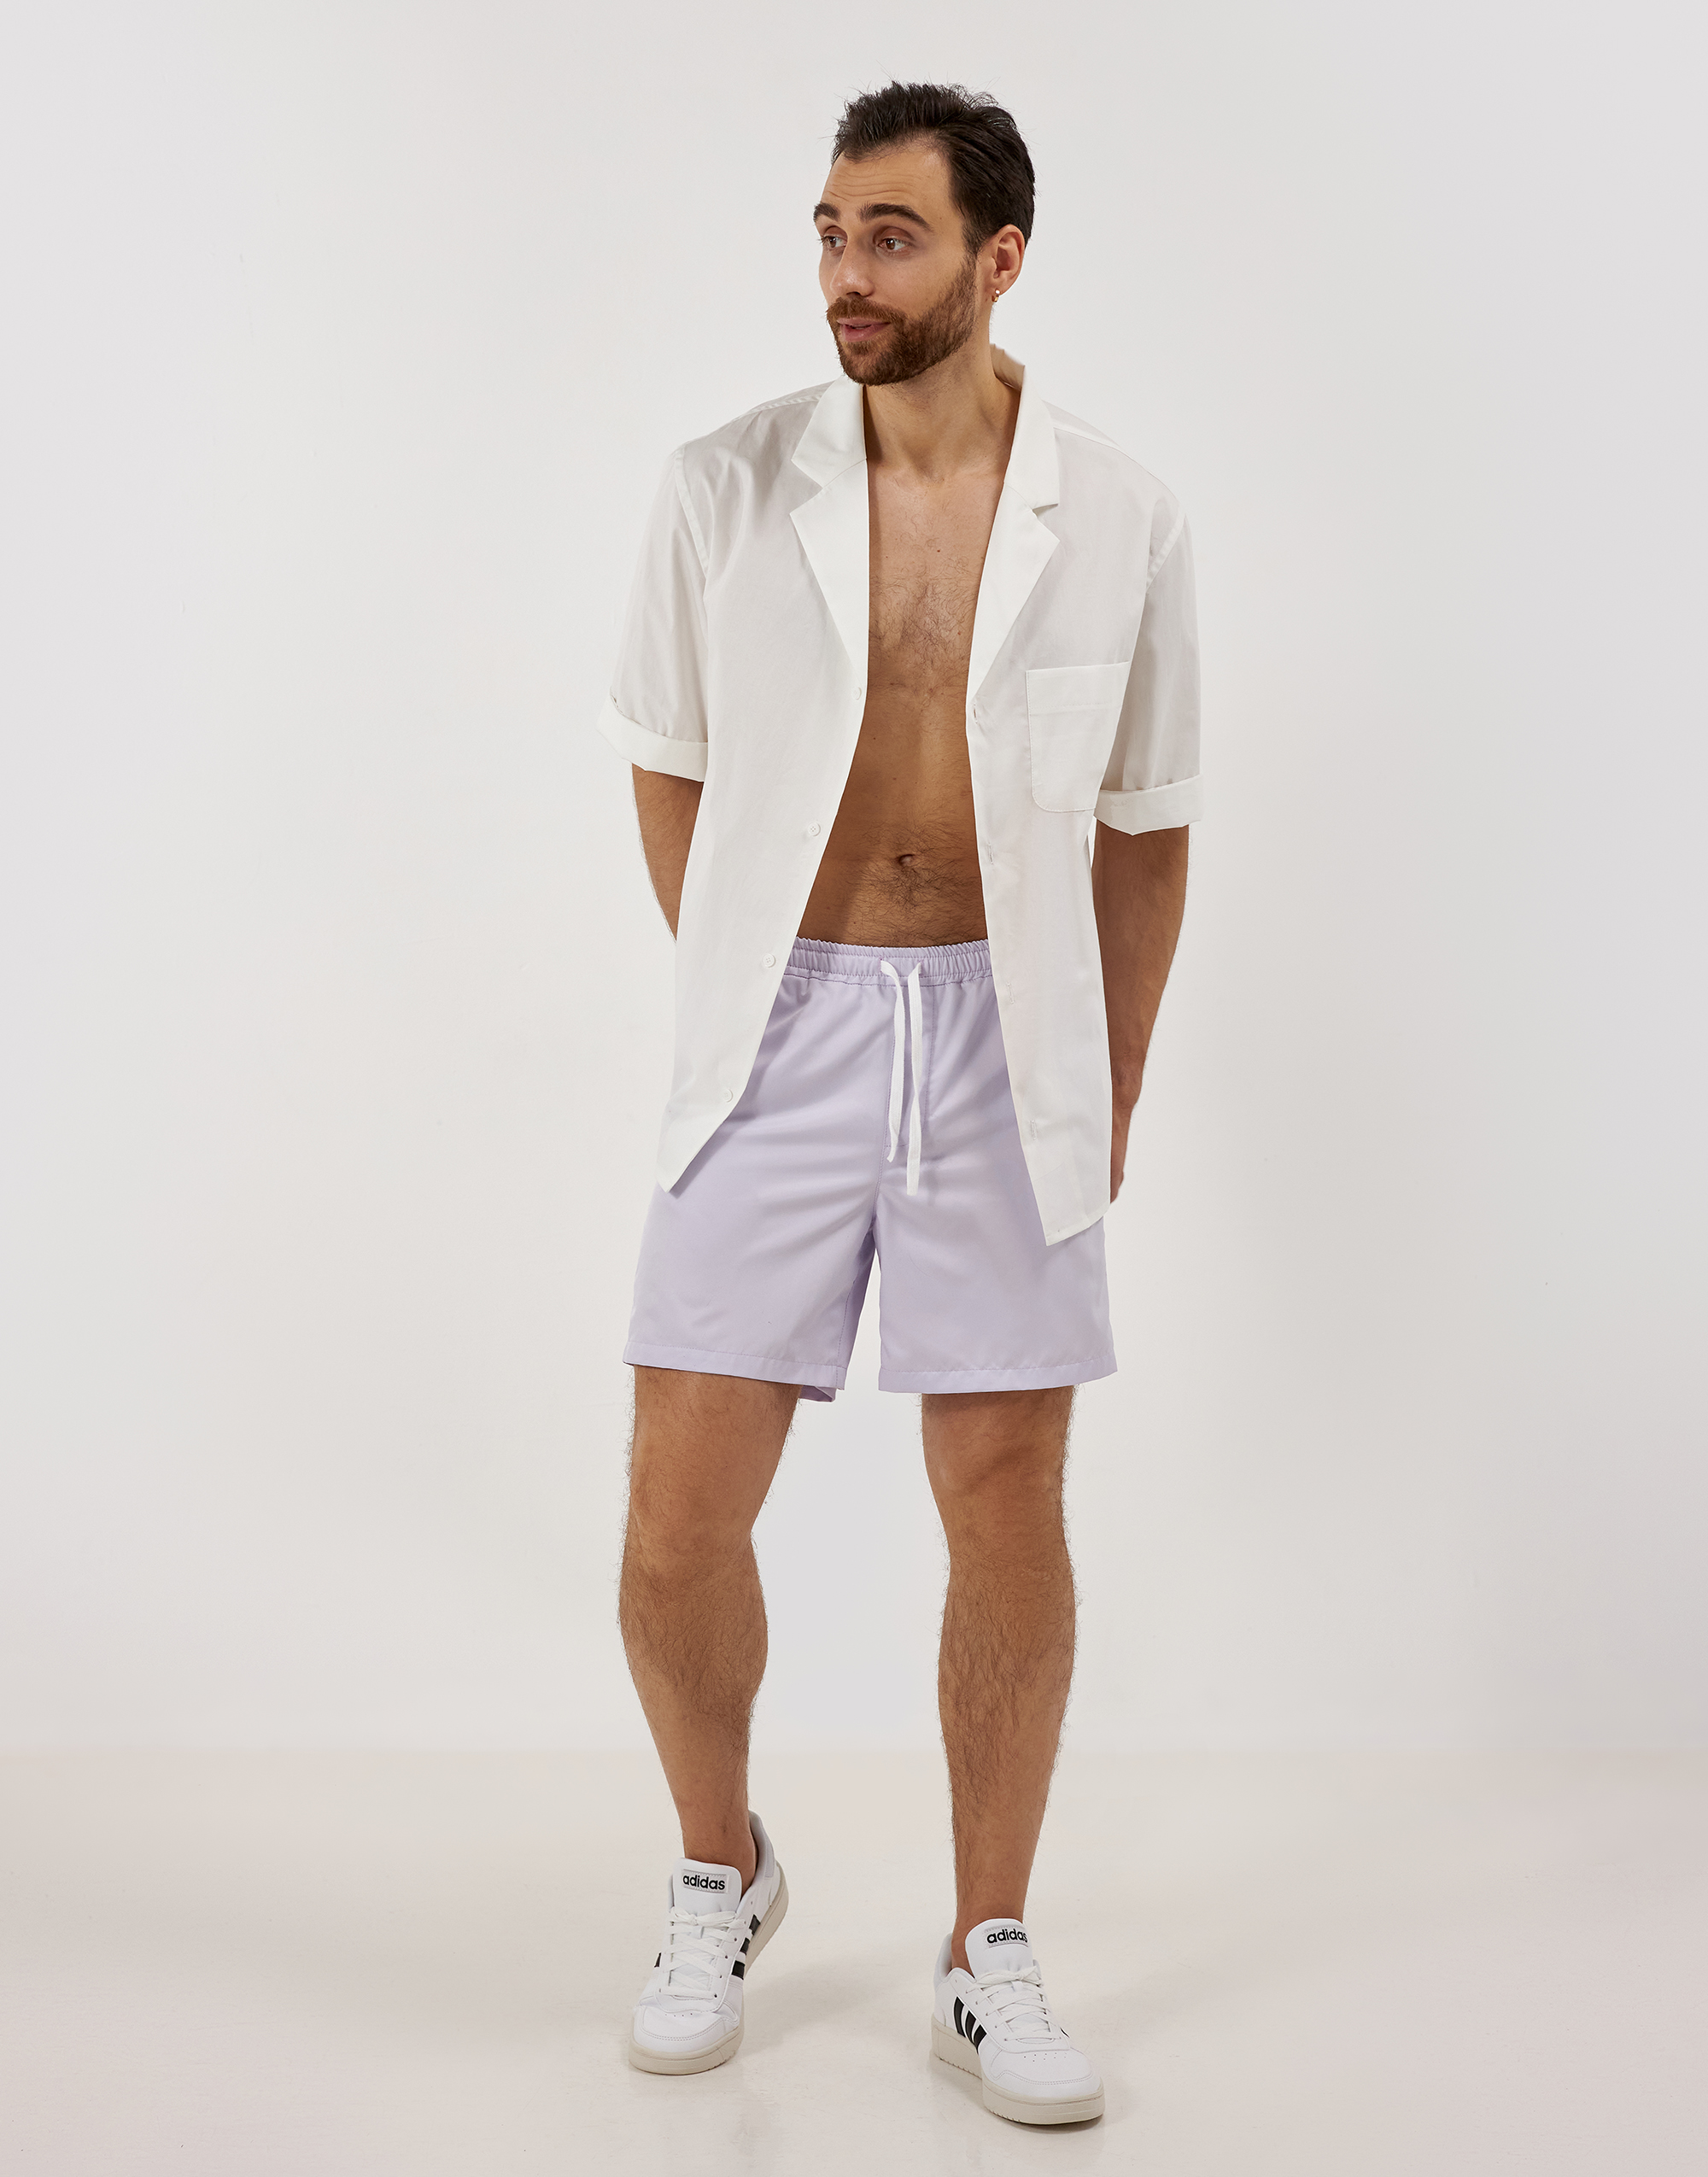 Мужские шорты, выкройка Grasser №470 – купить онлайн на сайте GRASSER,каталог мужских выкроек